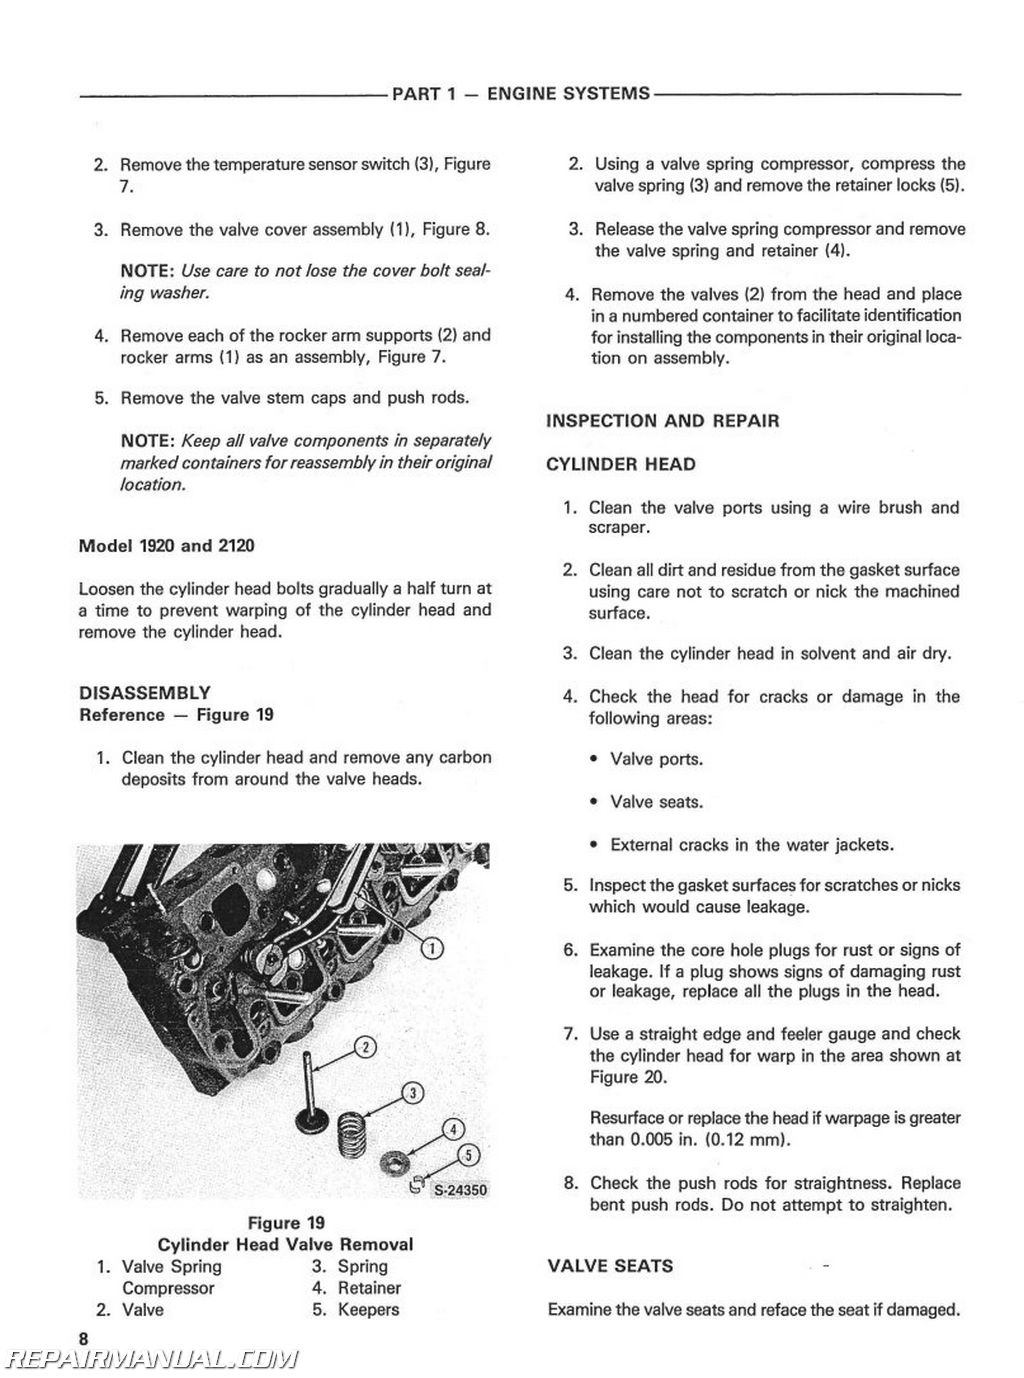 Ford 2120 repair manual #4